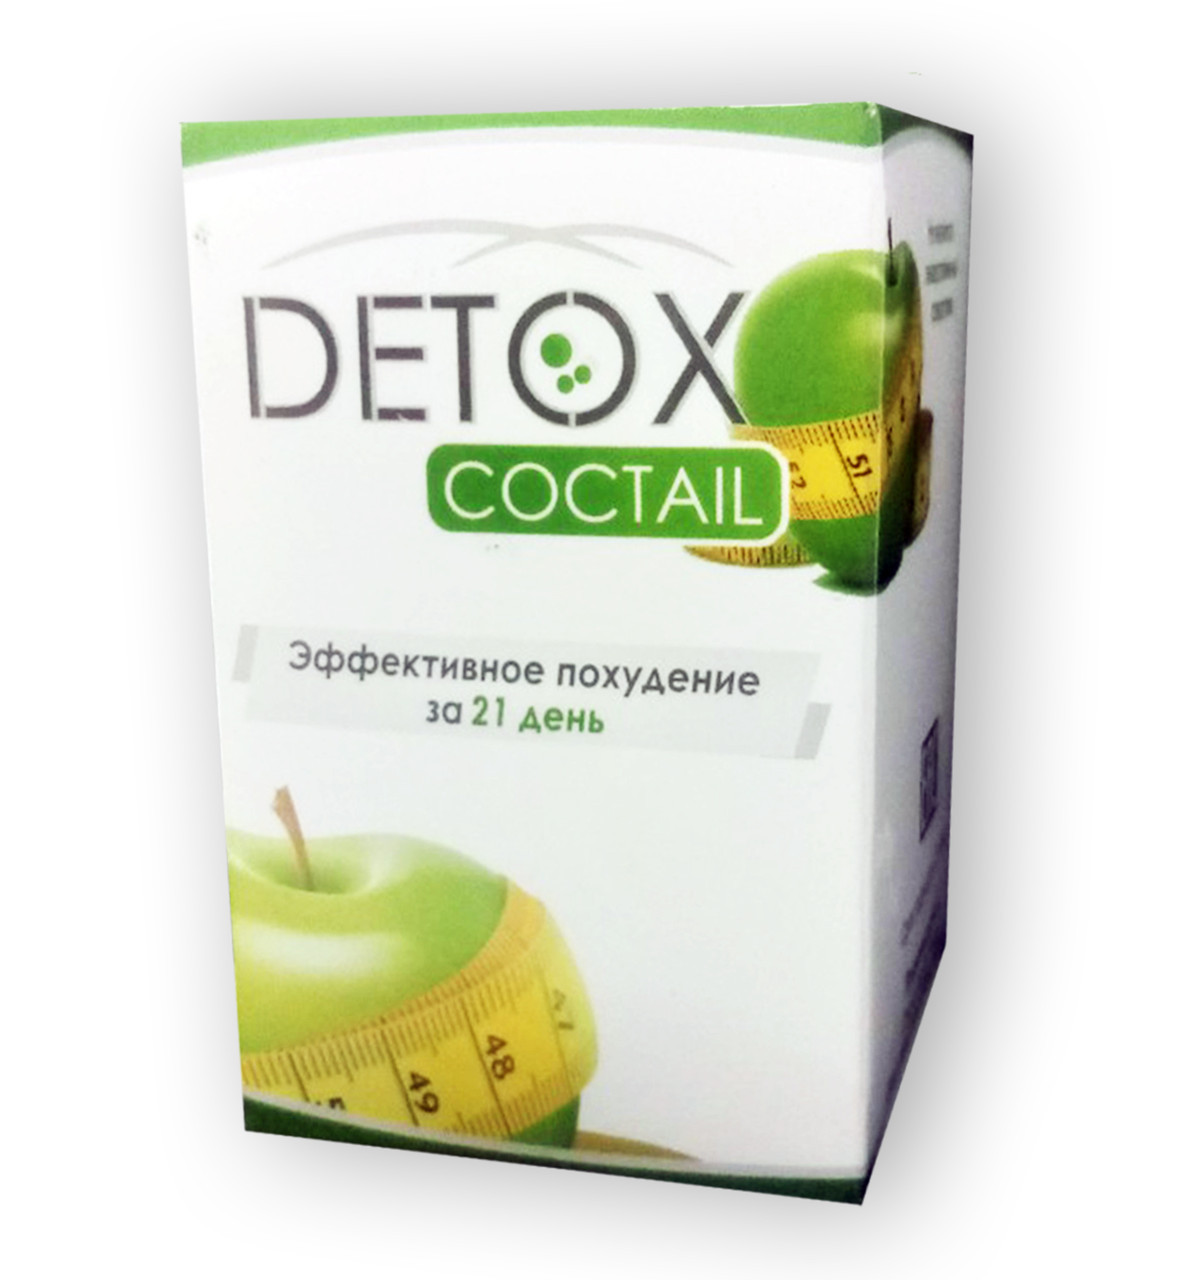 Detox Cocktail - Коктейль для схуднення і очищення організму (Детокс Коктейль), Ефективне схуднення за 21 день